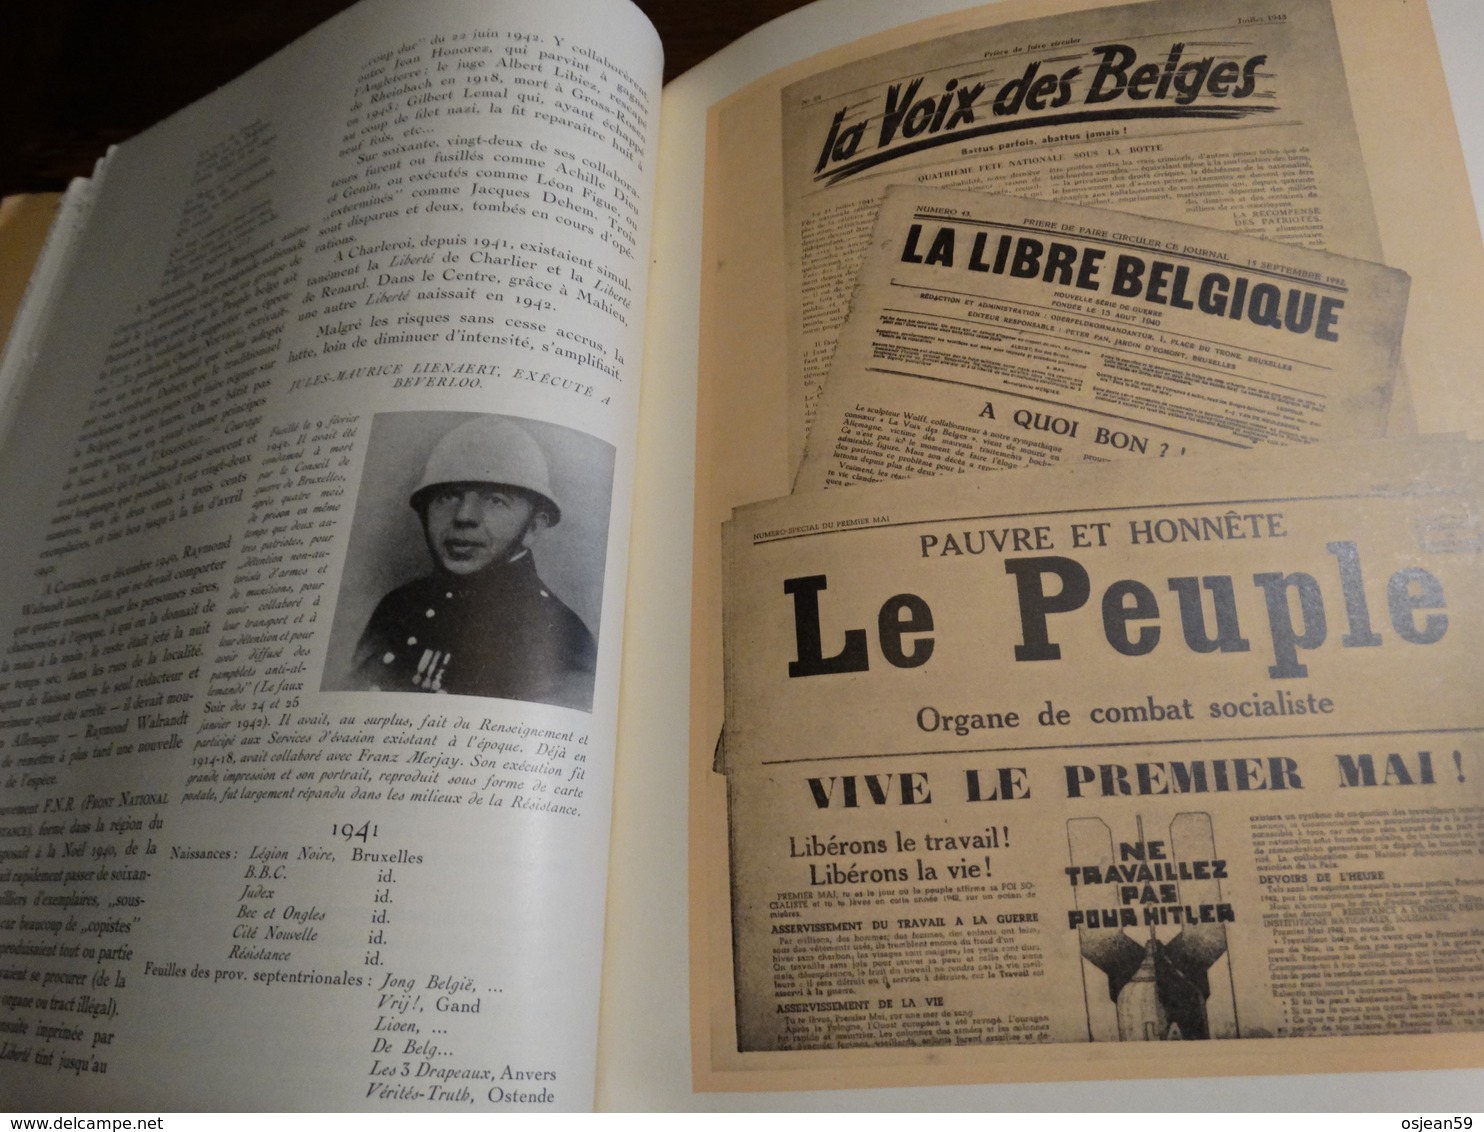 Livre d'or de la résistance belge.430 pages.Nombreuses photos.Bon état général.